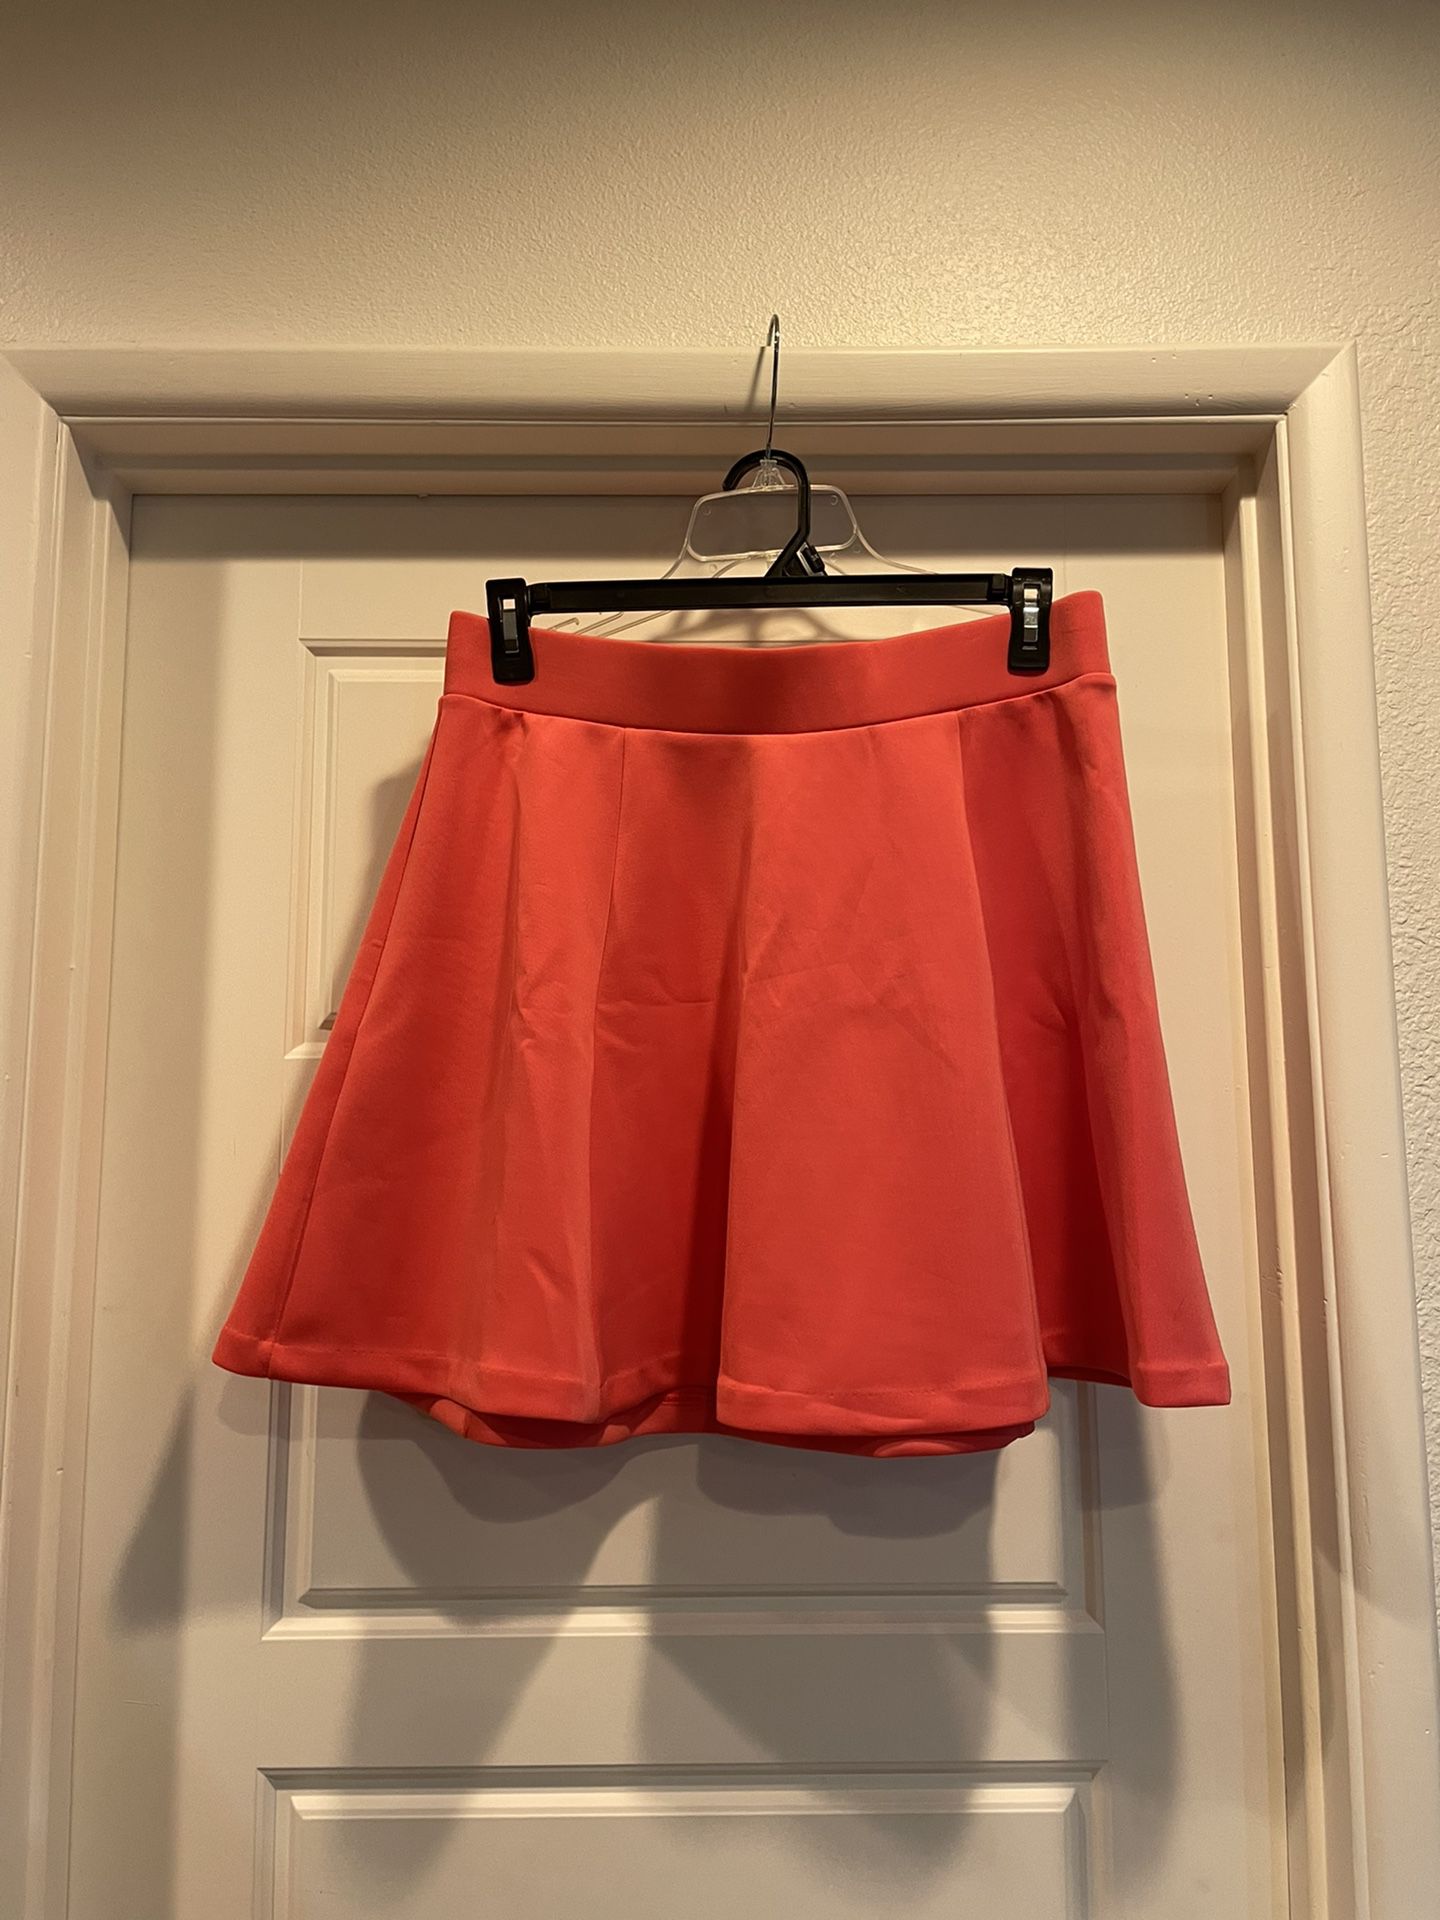 Salmon pink circle skirt size Large